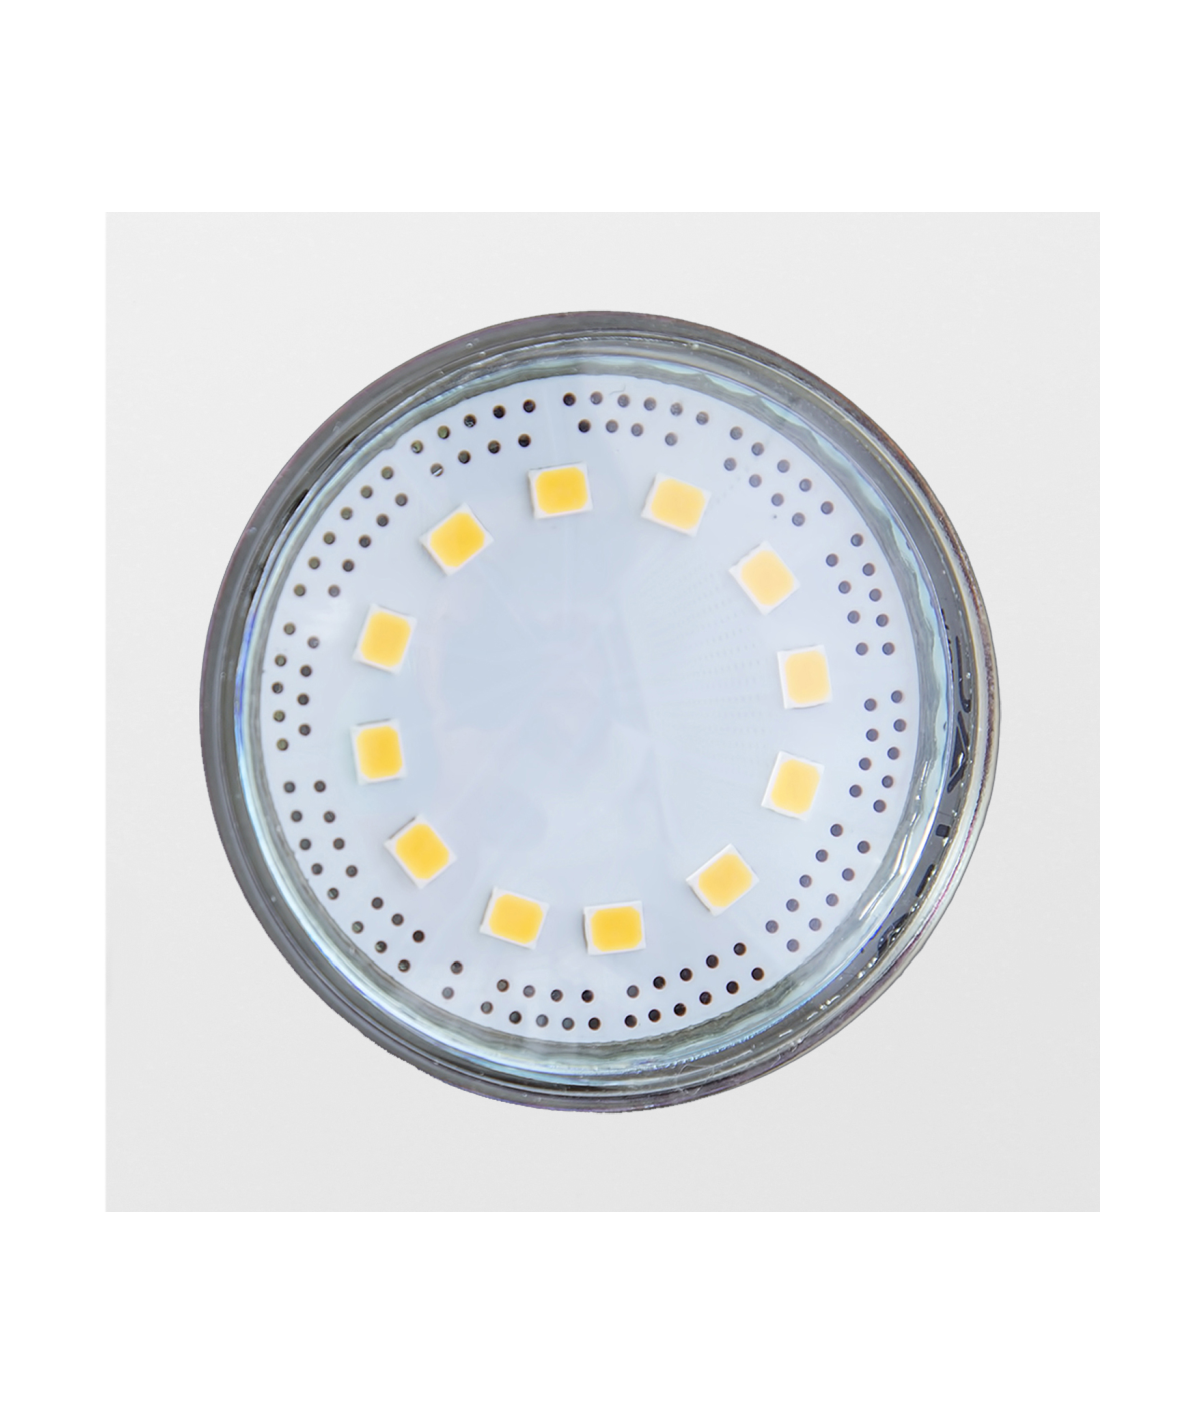 Кухонная вытяжка Perfelli T 6612 A 1000 W LED отзывы - изображения 5